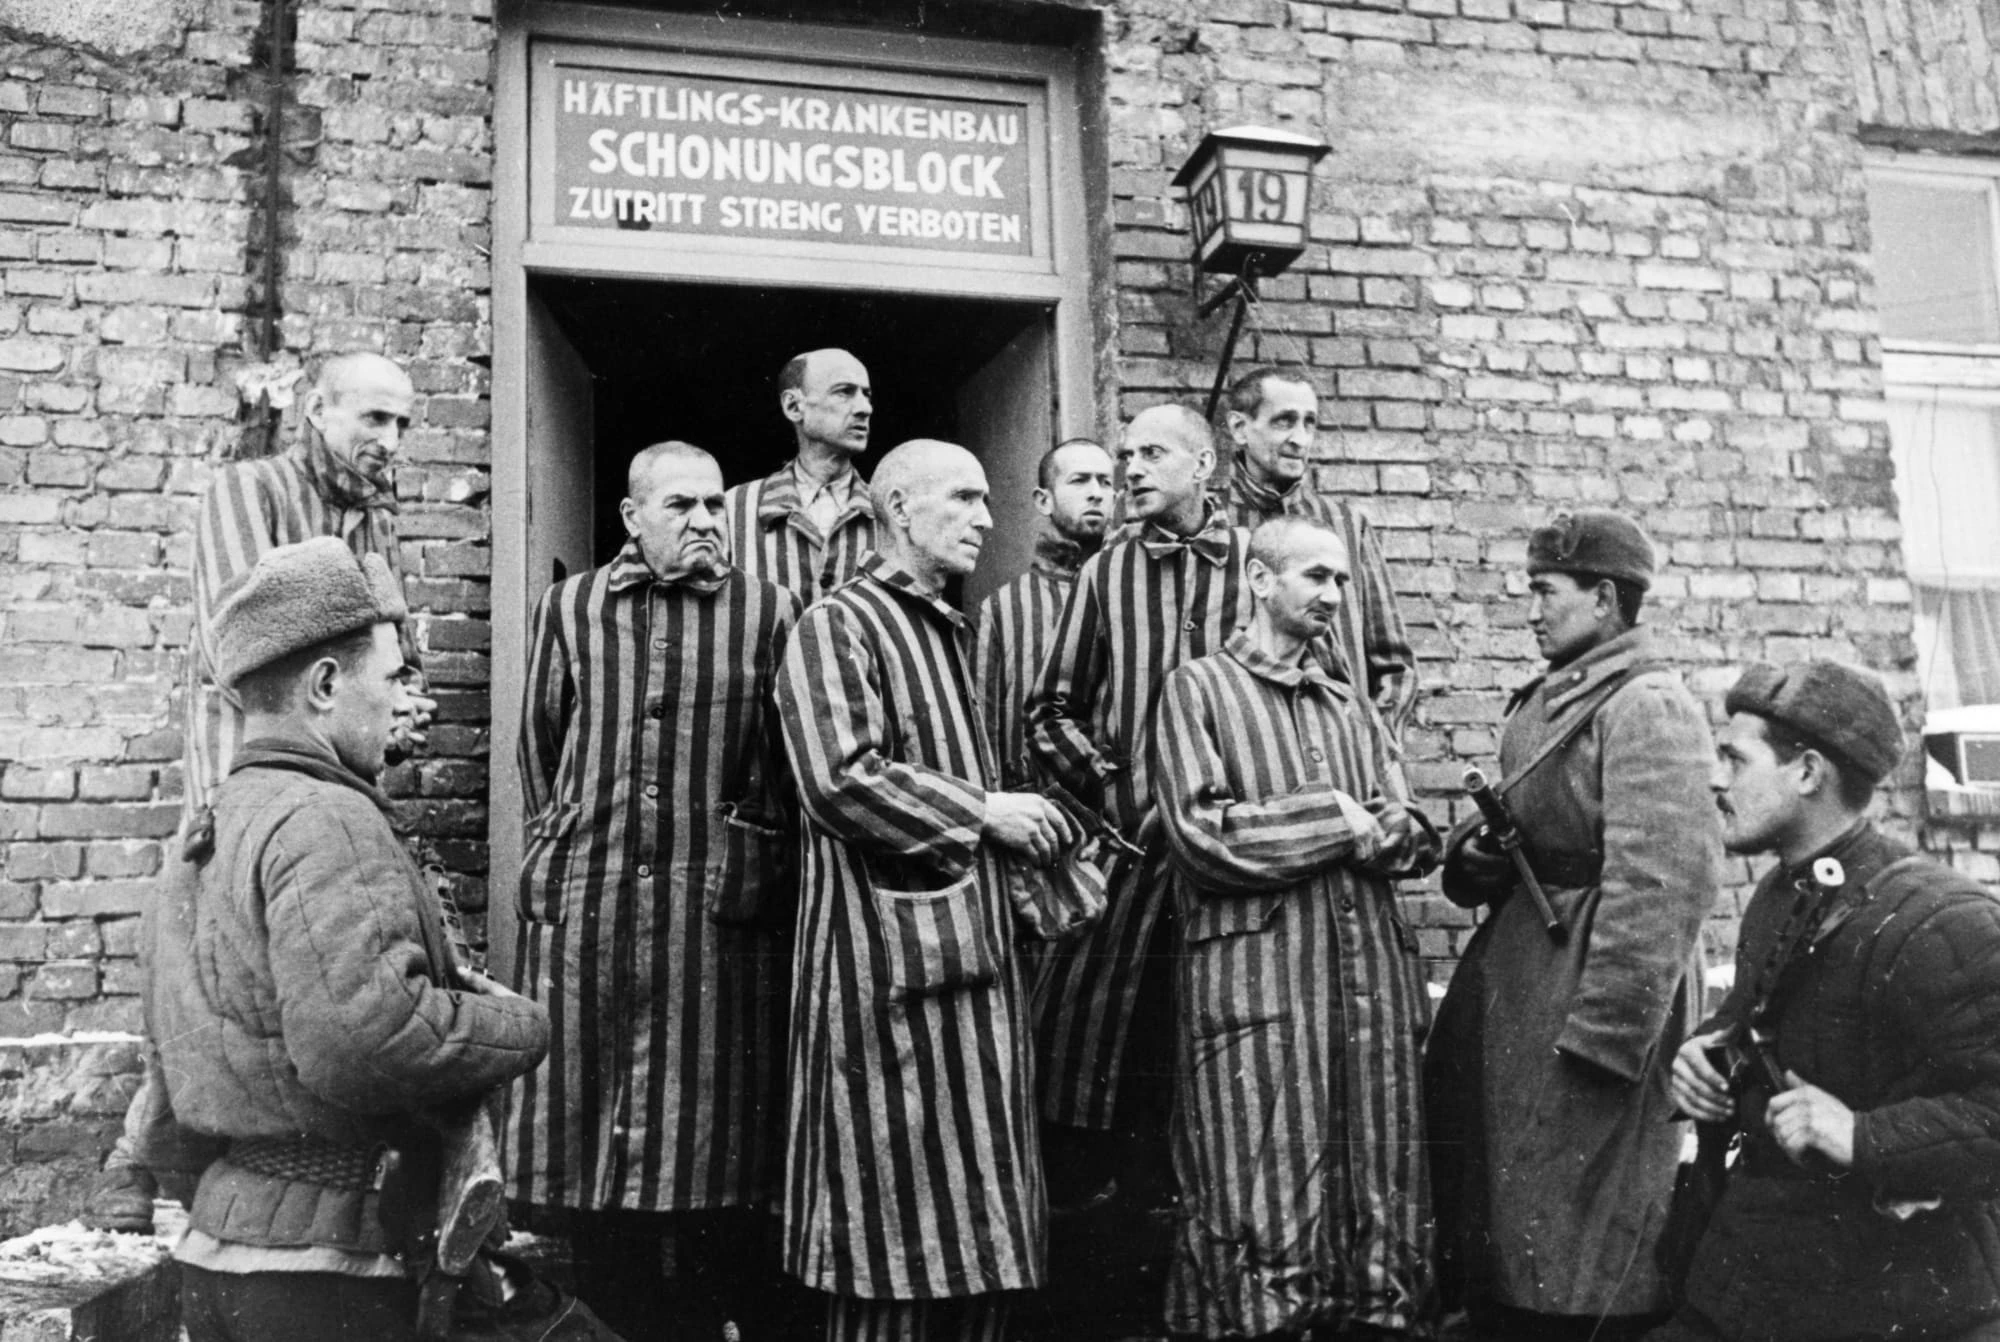 Trại tử thần Auschwitz được mệnh danh là "địa ngục trần gian" khi phát xít Đức tàn sát đẫm máu hơn 1 triệu tù nhân, chủ yếu là người Do Thái kể từ khi Hitler lên nắm quyền cho đến đầu năm 1945.